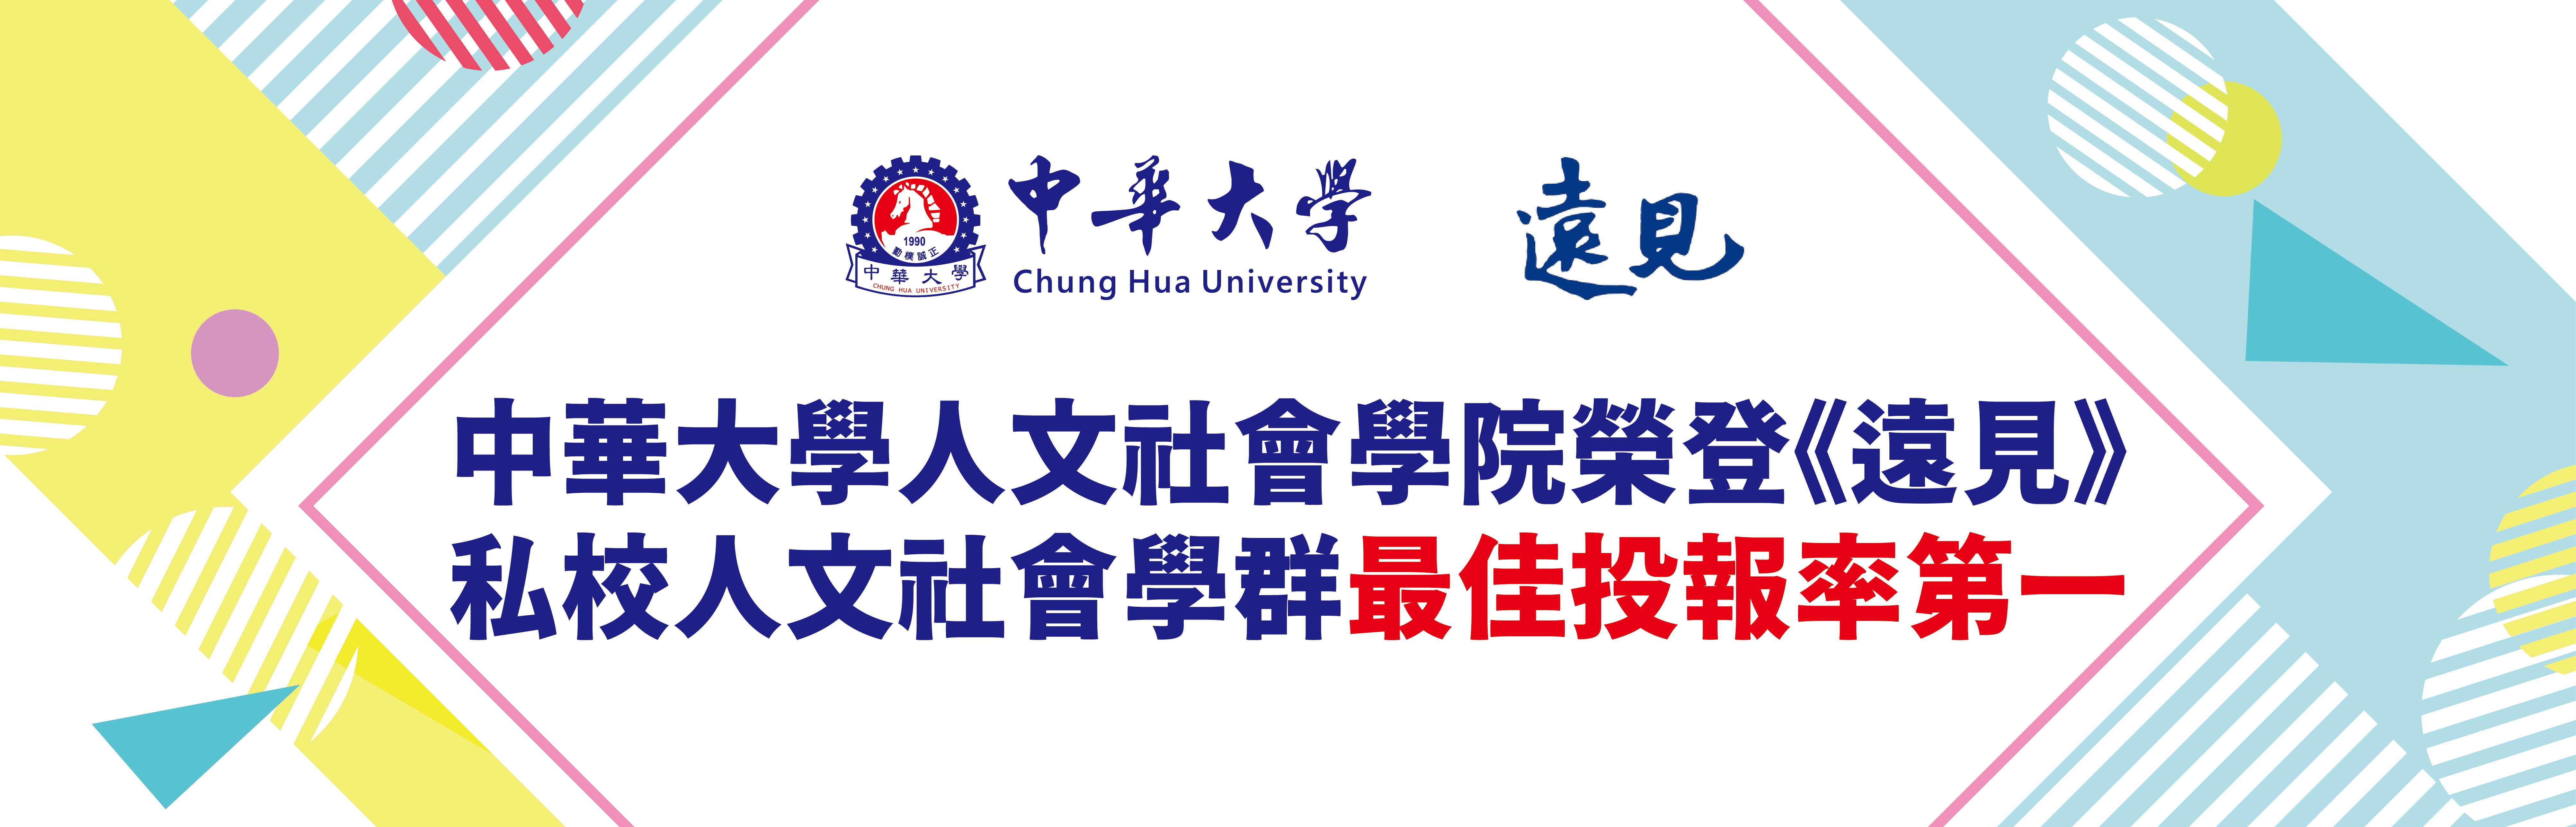 中華大學人文社會學院榮登《遠見》私校人文社會學群最佳投報率第一